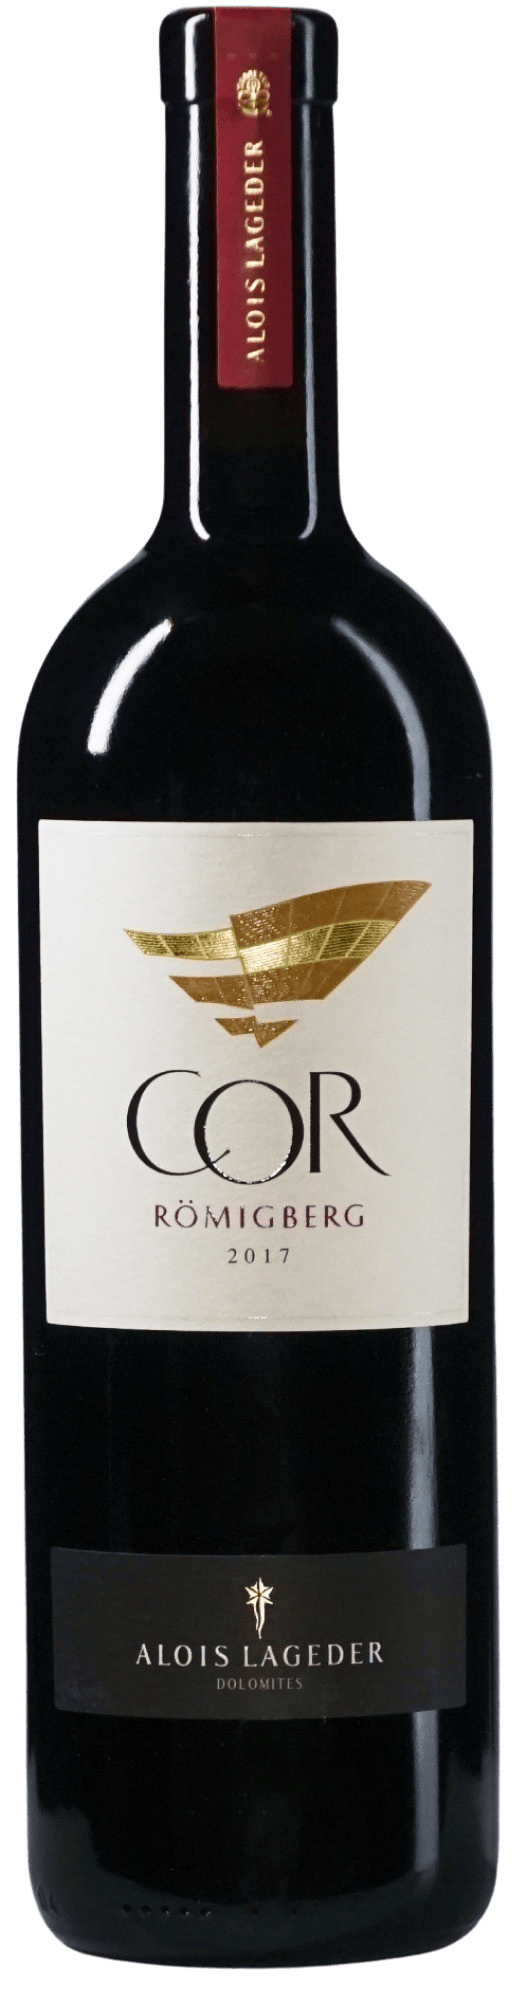 Römigberg